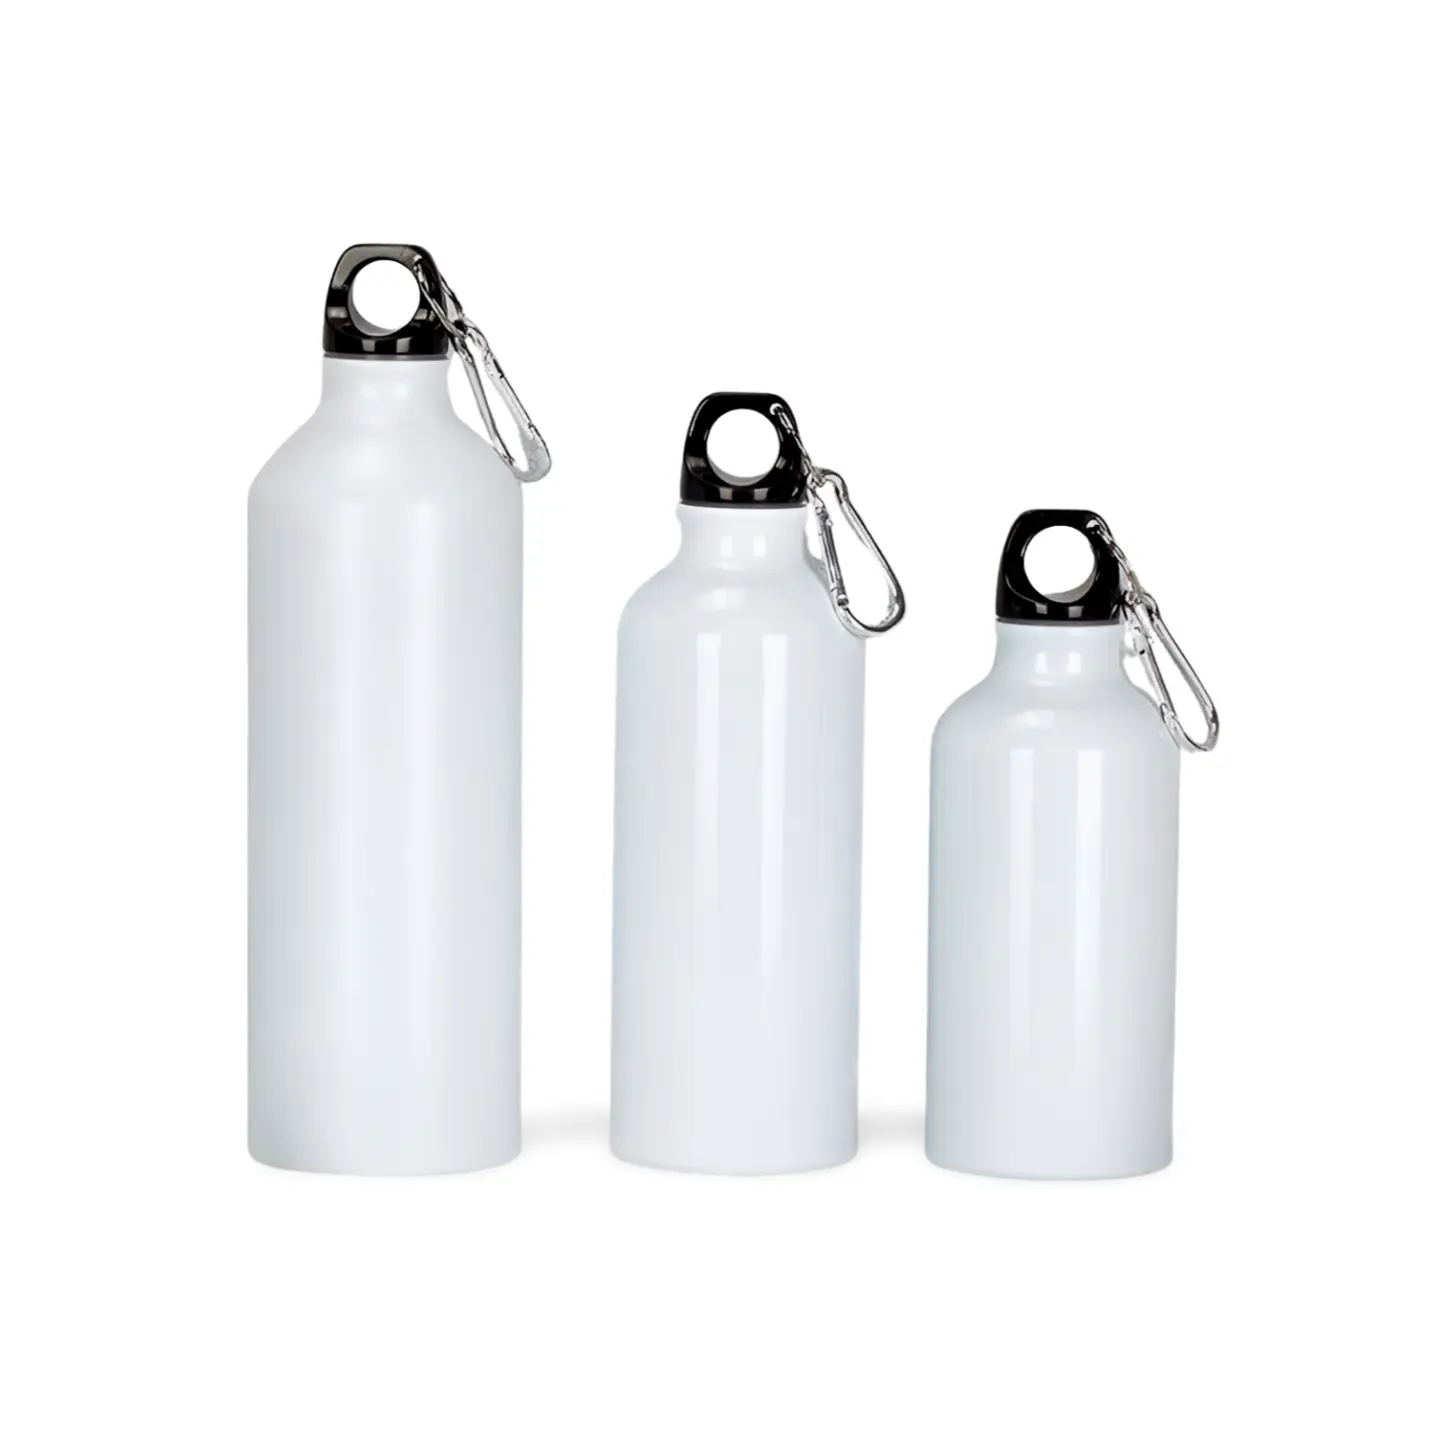 Promosyon için karabina klibi ile özelleştirilmiş açık spor süblimasyon paslanmaz çelik alüminyum 600 ml klasik su şişesi